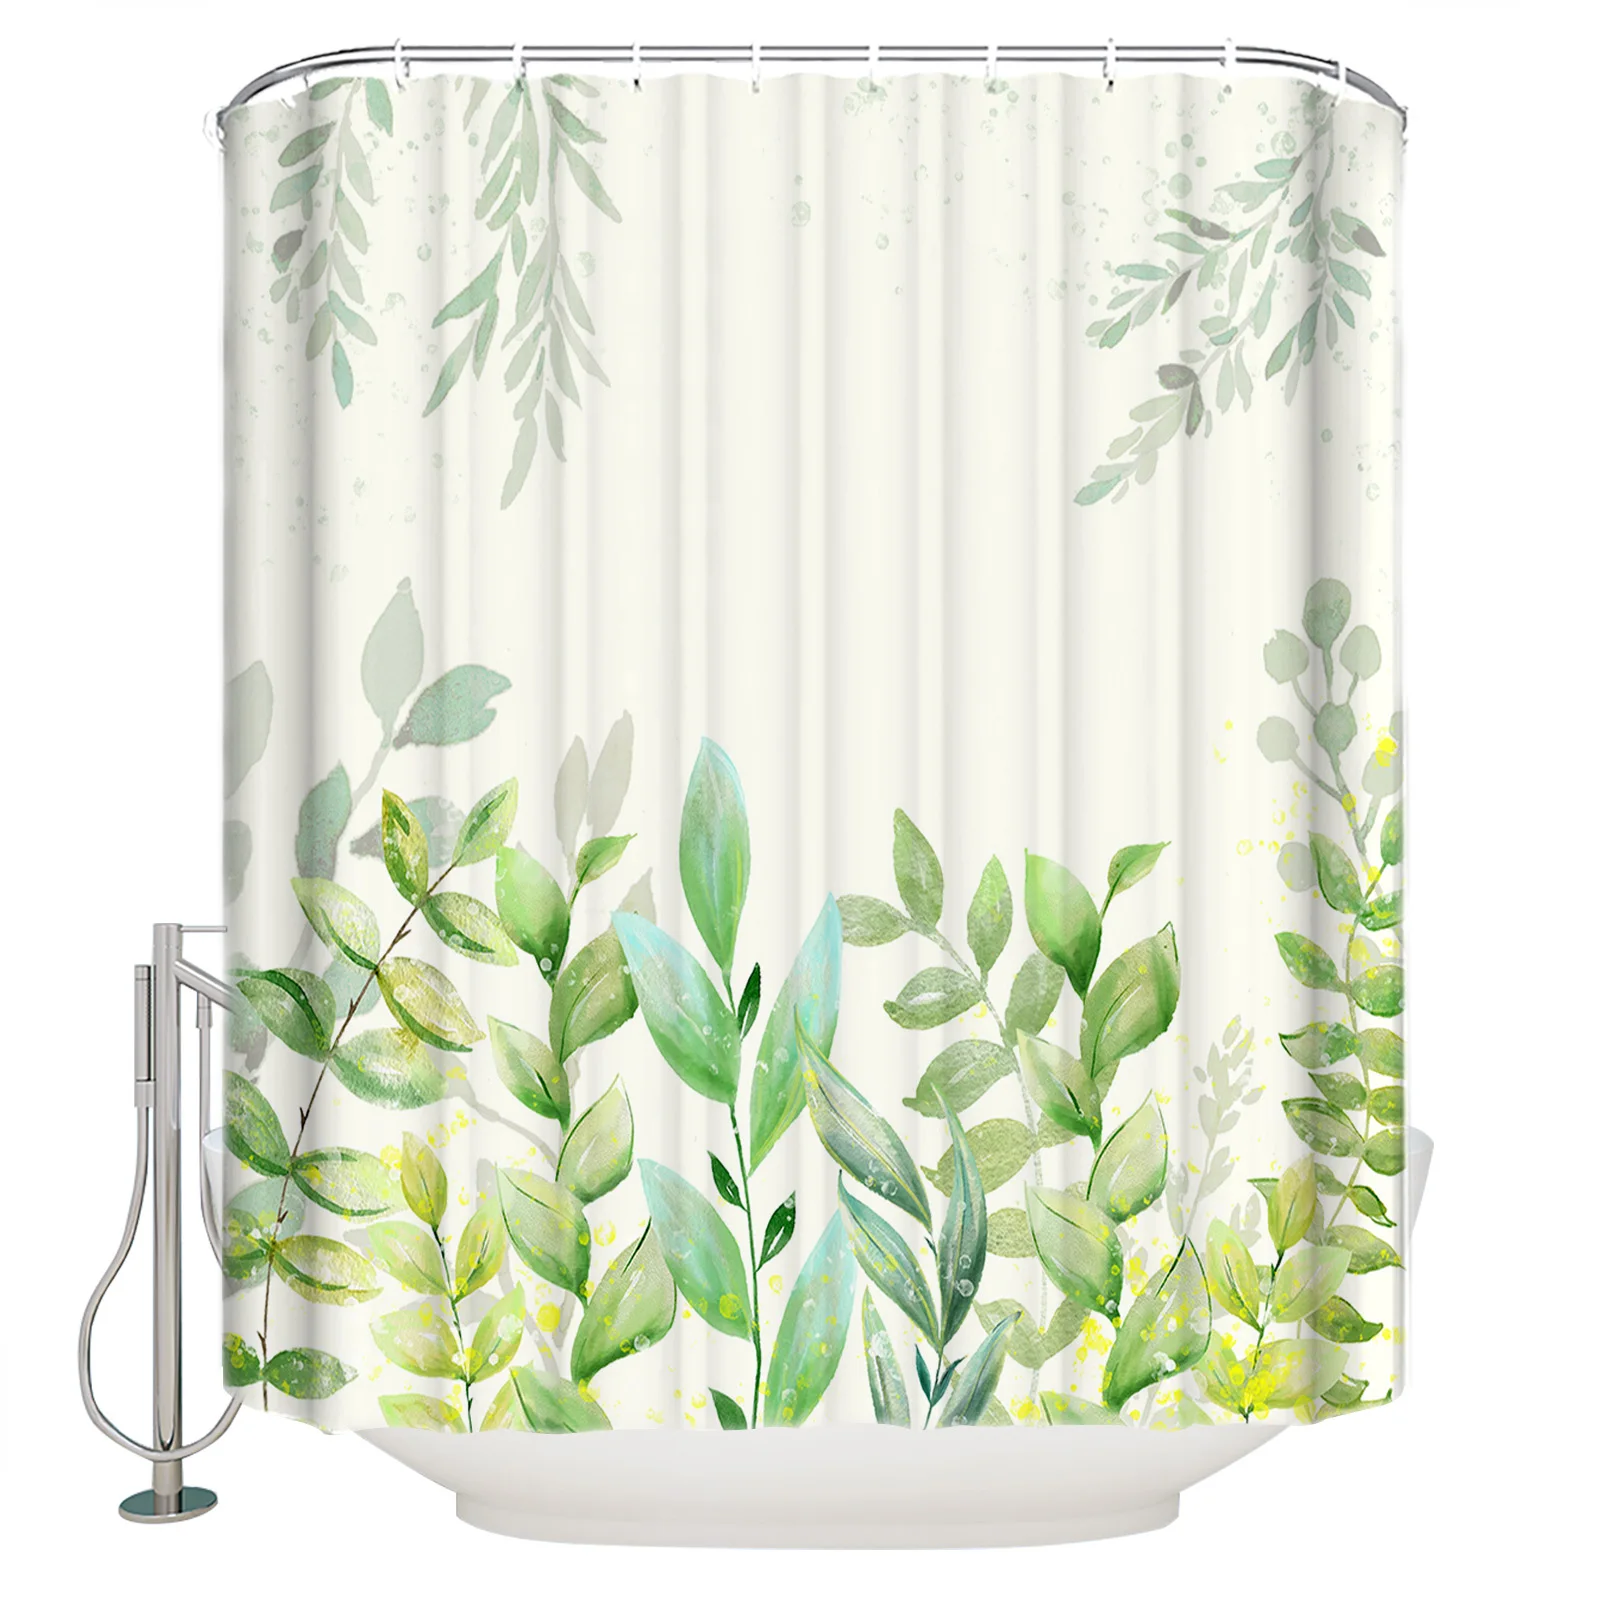 

Летняя душевая занавеска с листьями растений, набор занавесок для душа в ванную комнату, с крючками, занавеска для душа из полиэстера, декор ...